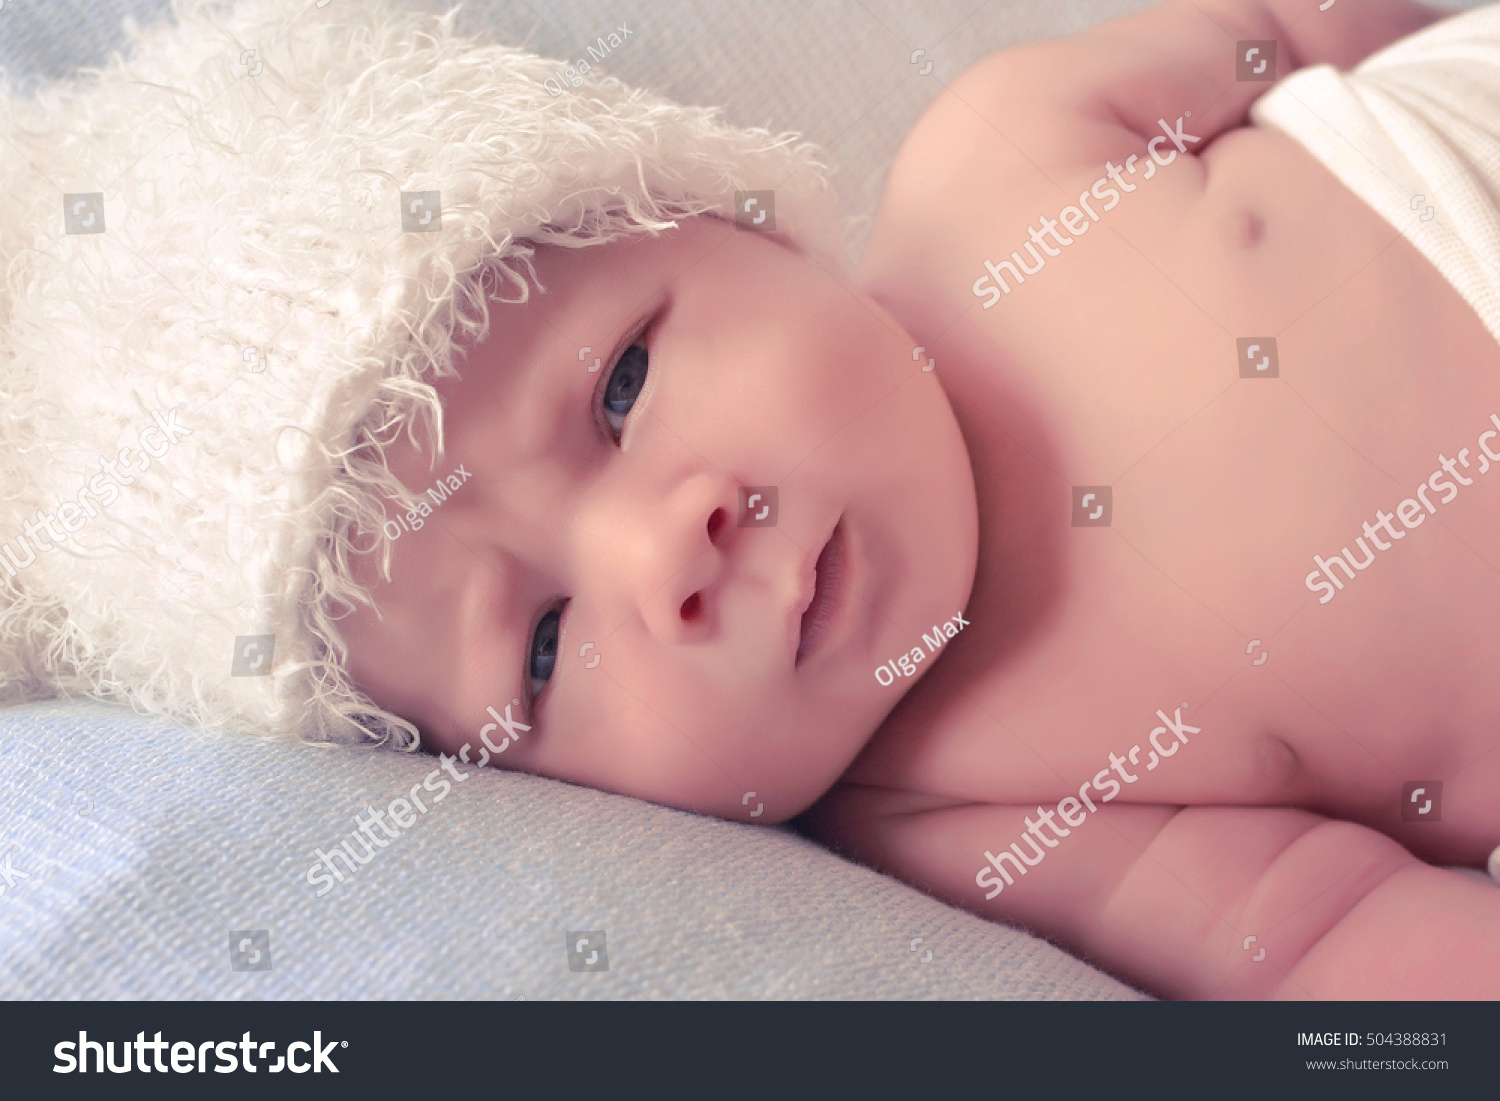 Little newborn baby #504388831